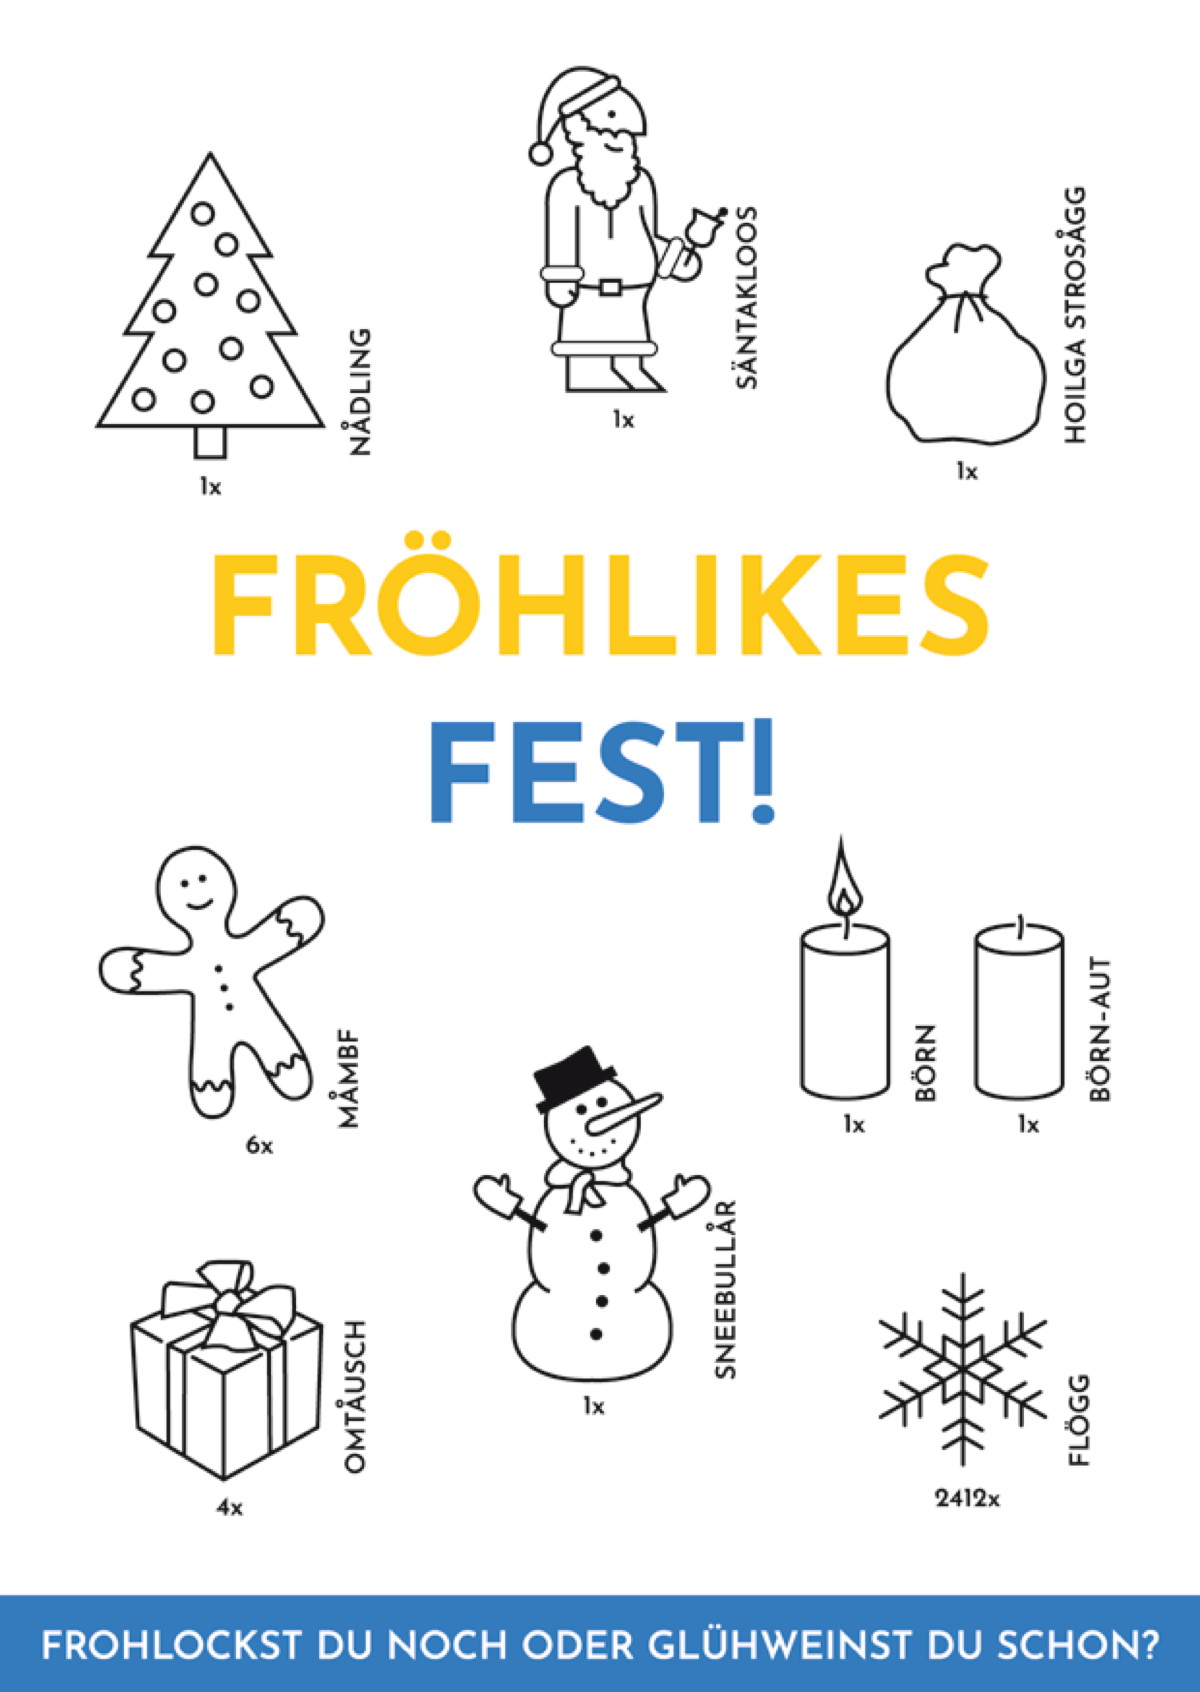 Fröhlikes Fest